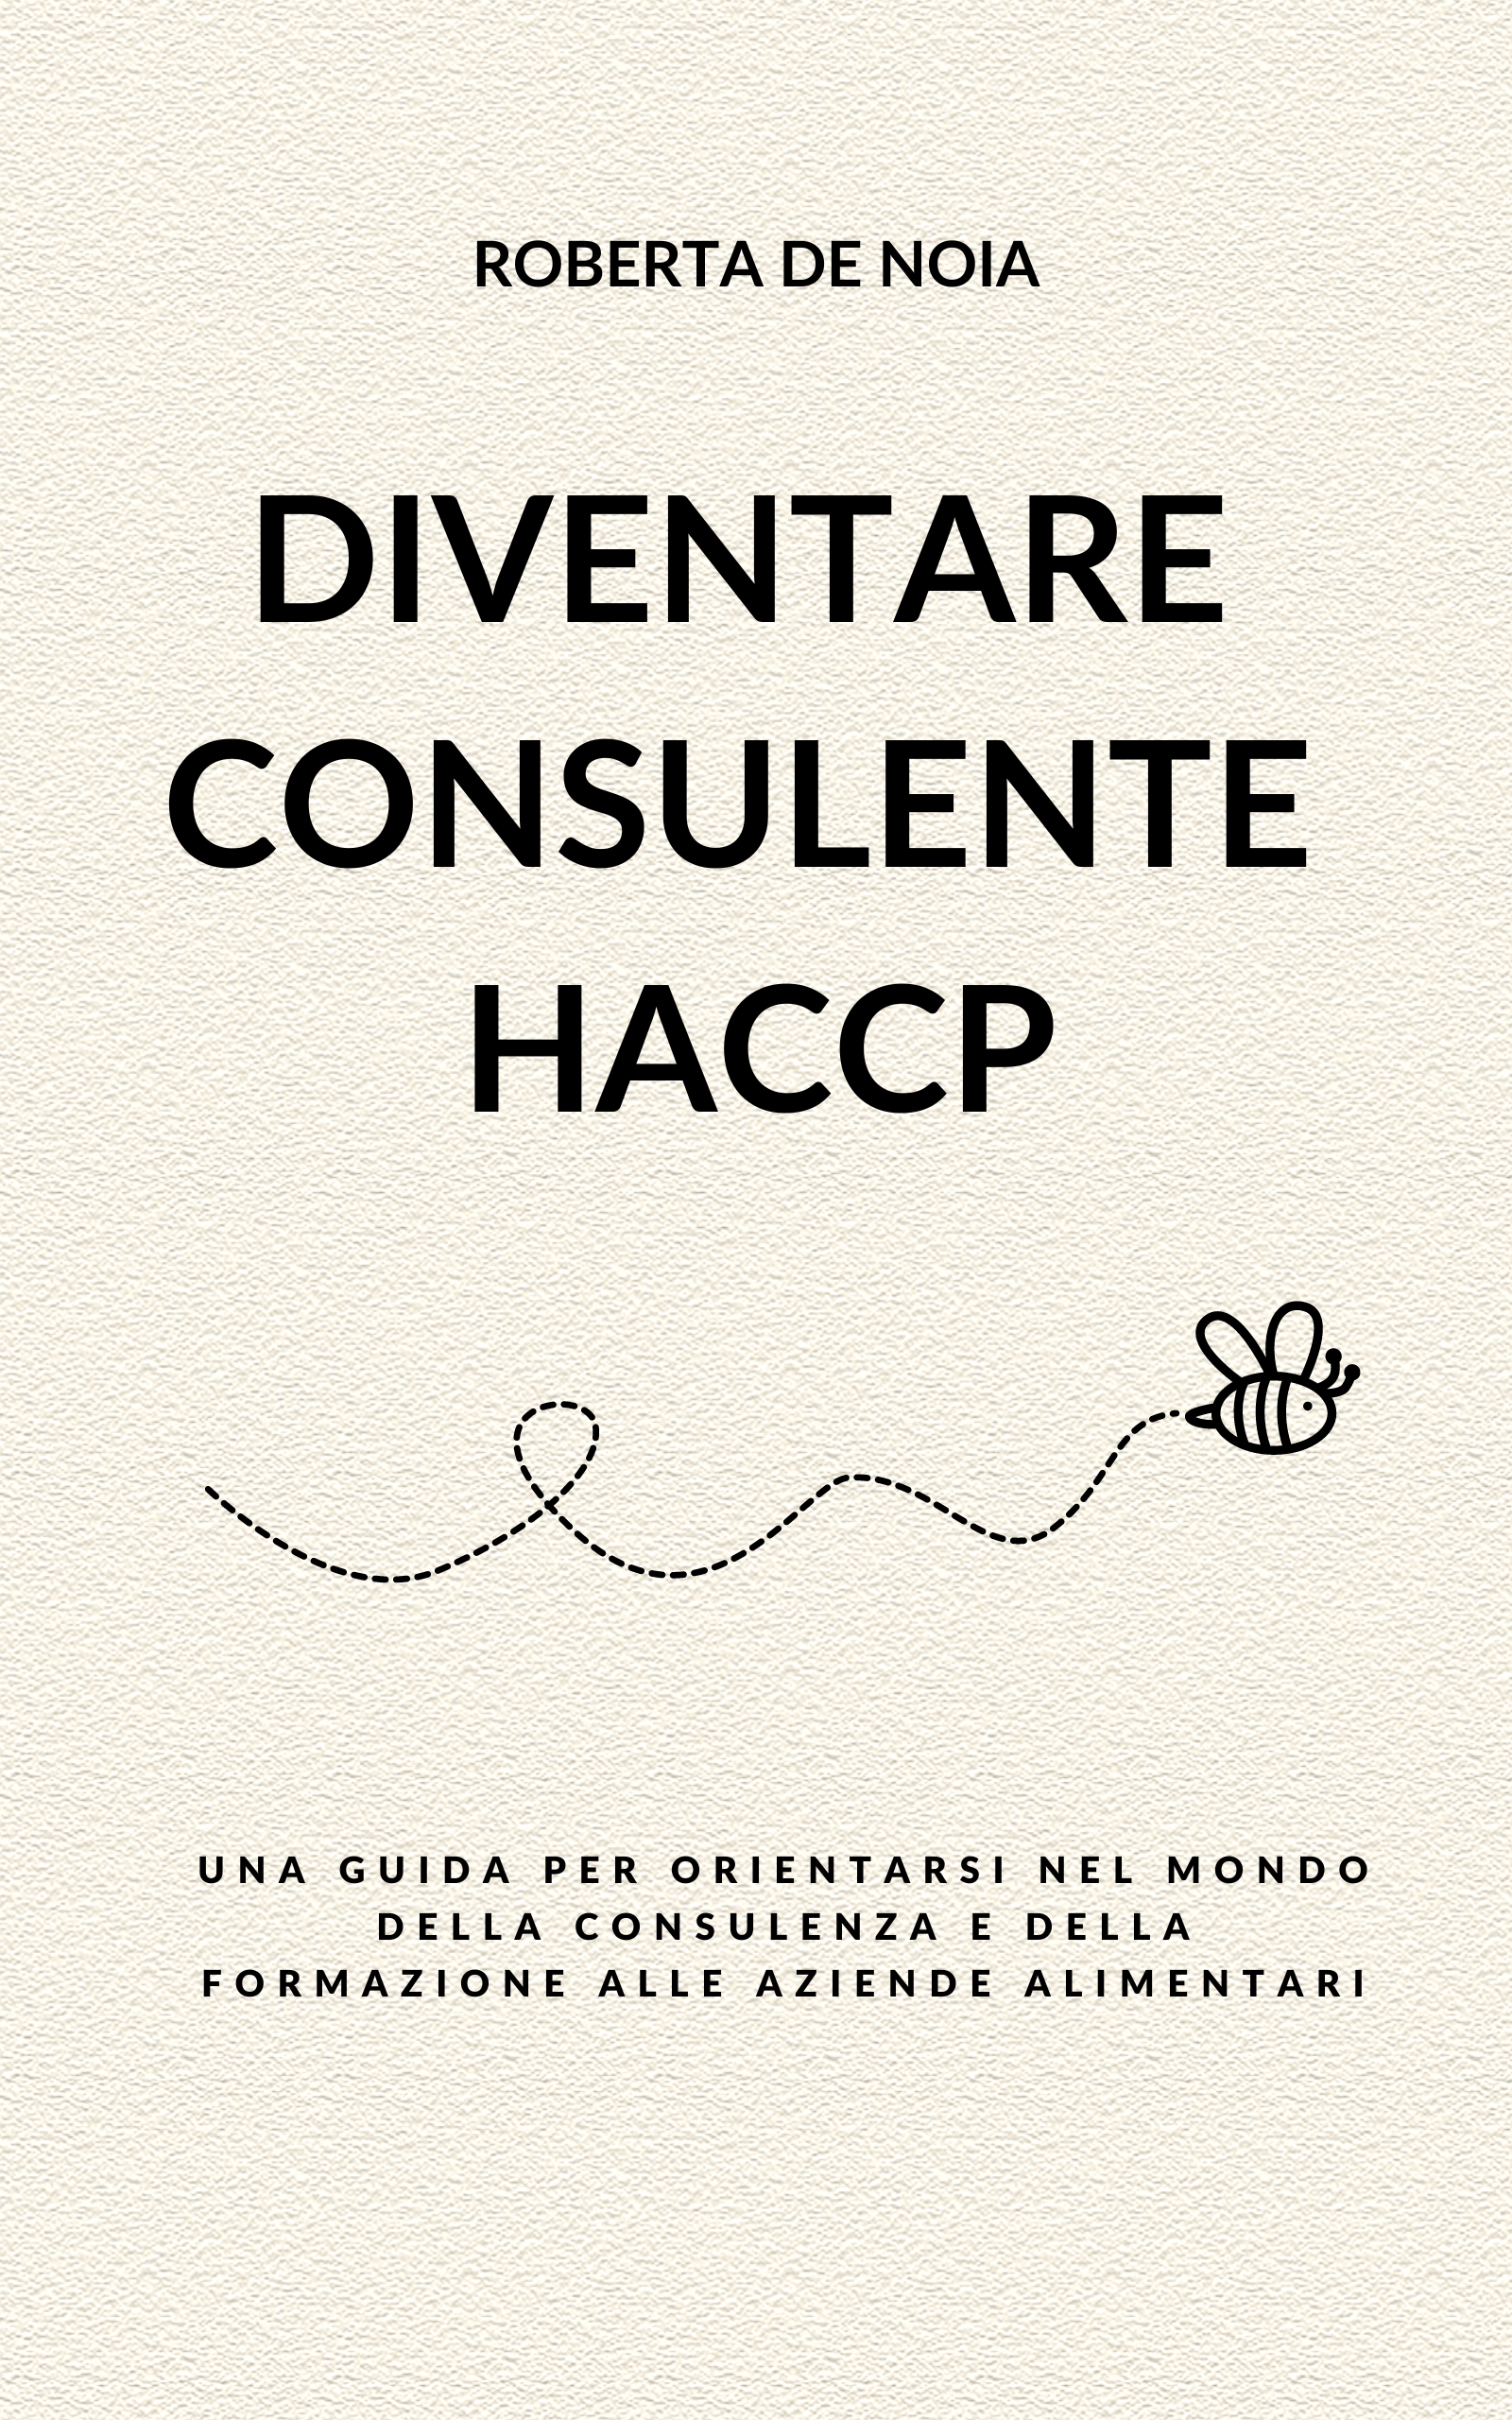 Diventare consulente HACCP - haccpeasy.it